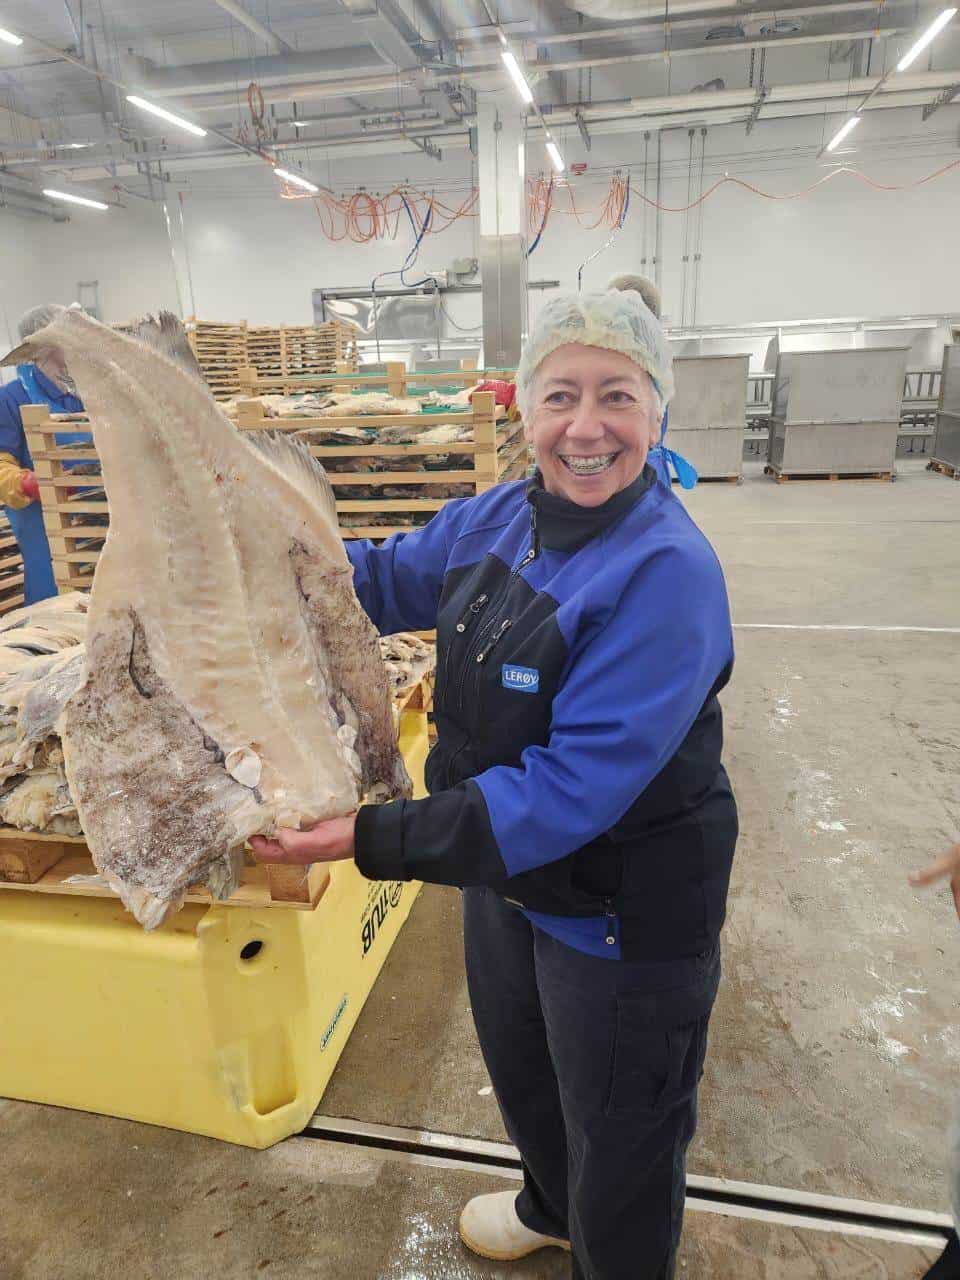 La Salted Fish Department Manager, Teresa Miranda, sujetando uno de los bacalos abiertos antes del proceso de secado en las instalaciones de Leroy